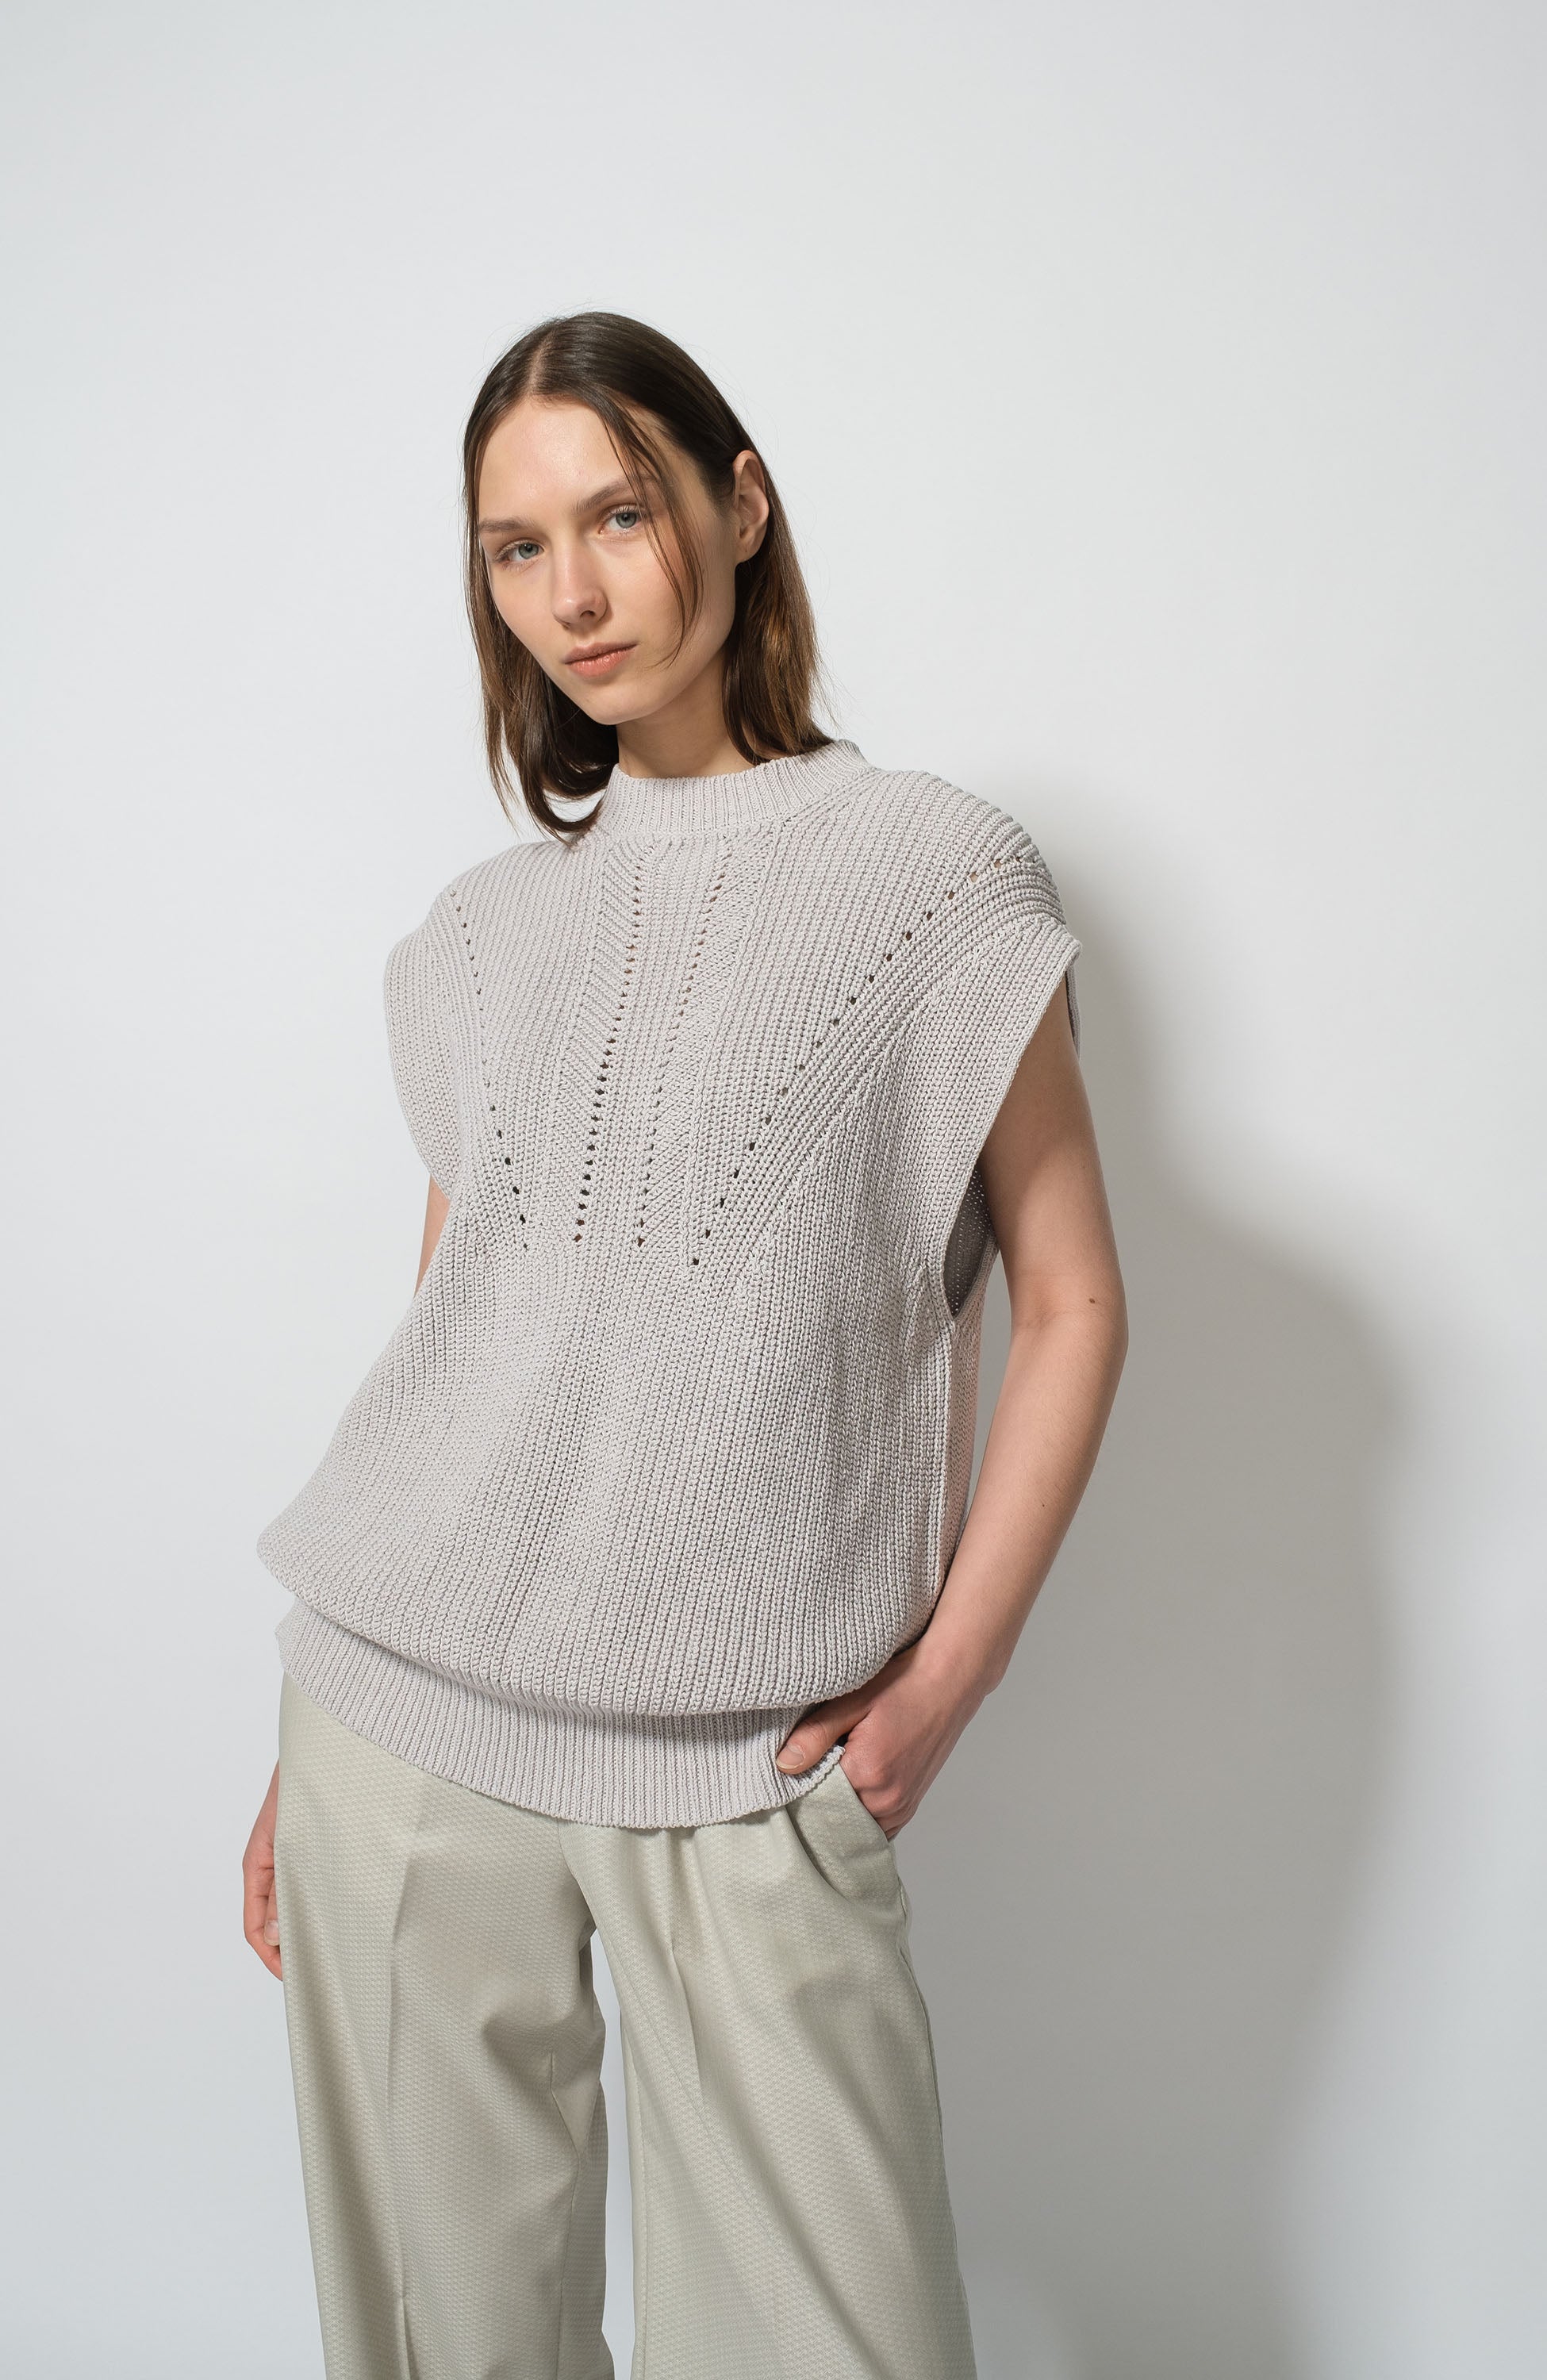 Knit cotton vest